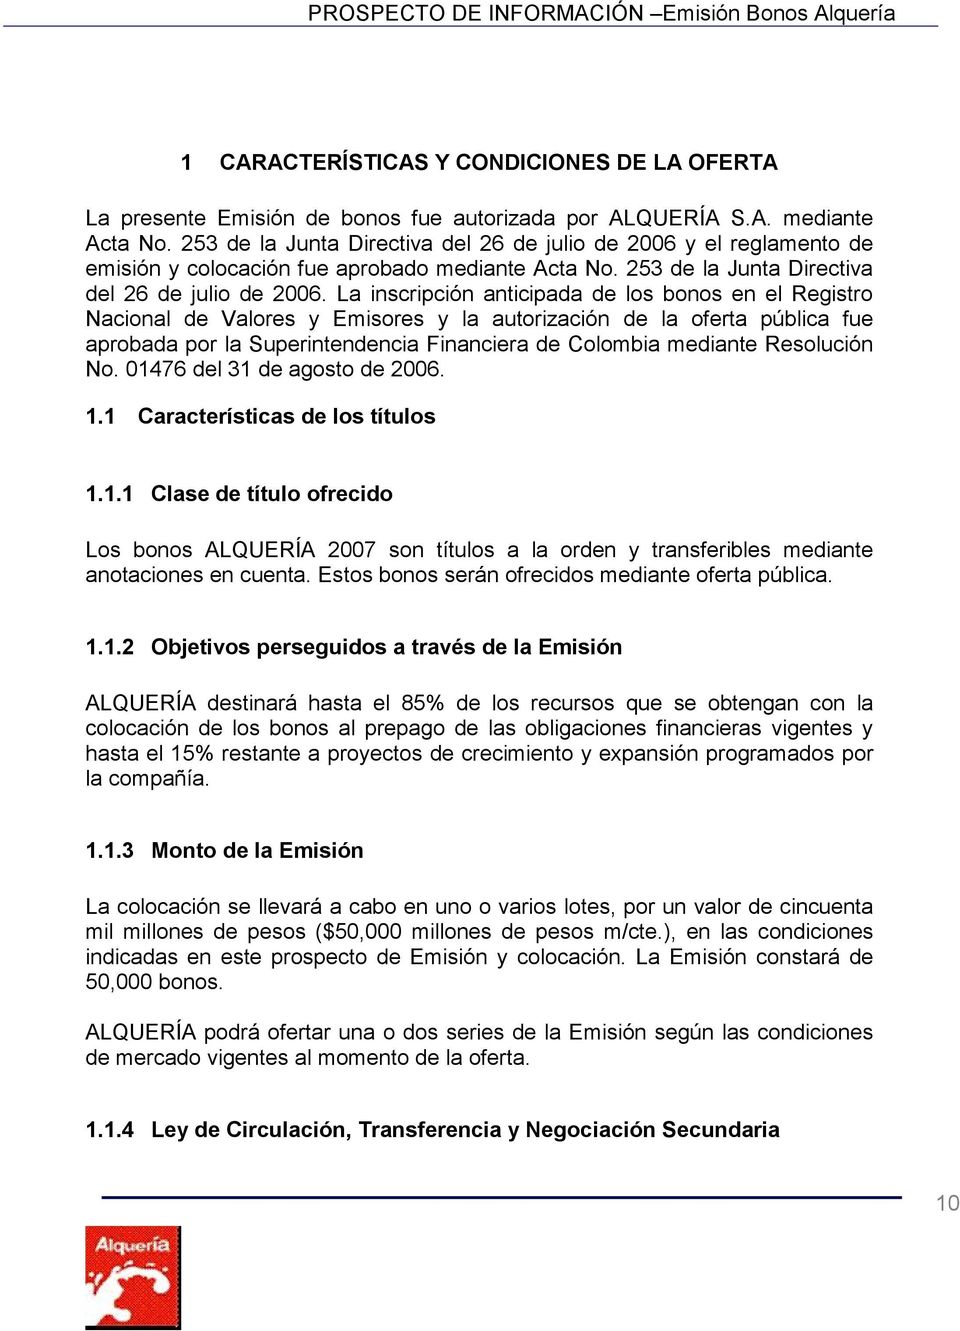 La inscripción anticipada de los bonos en el Registro Nacional de Valores y Emisores y la autorización de la oferta pública fue aprobada por la Superintendencia Financiera de Colombia mediante